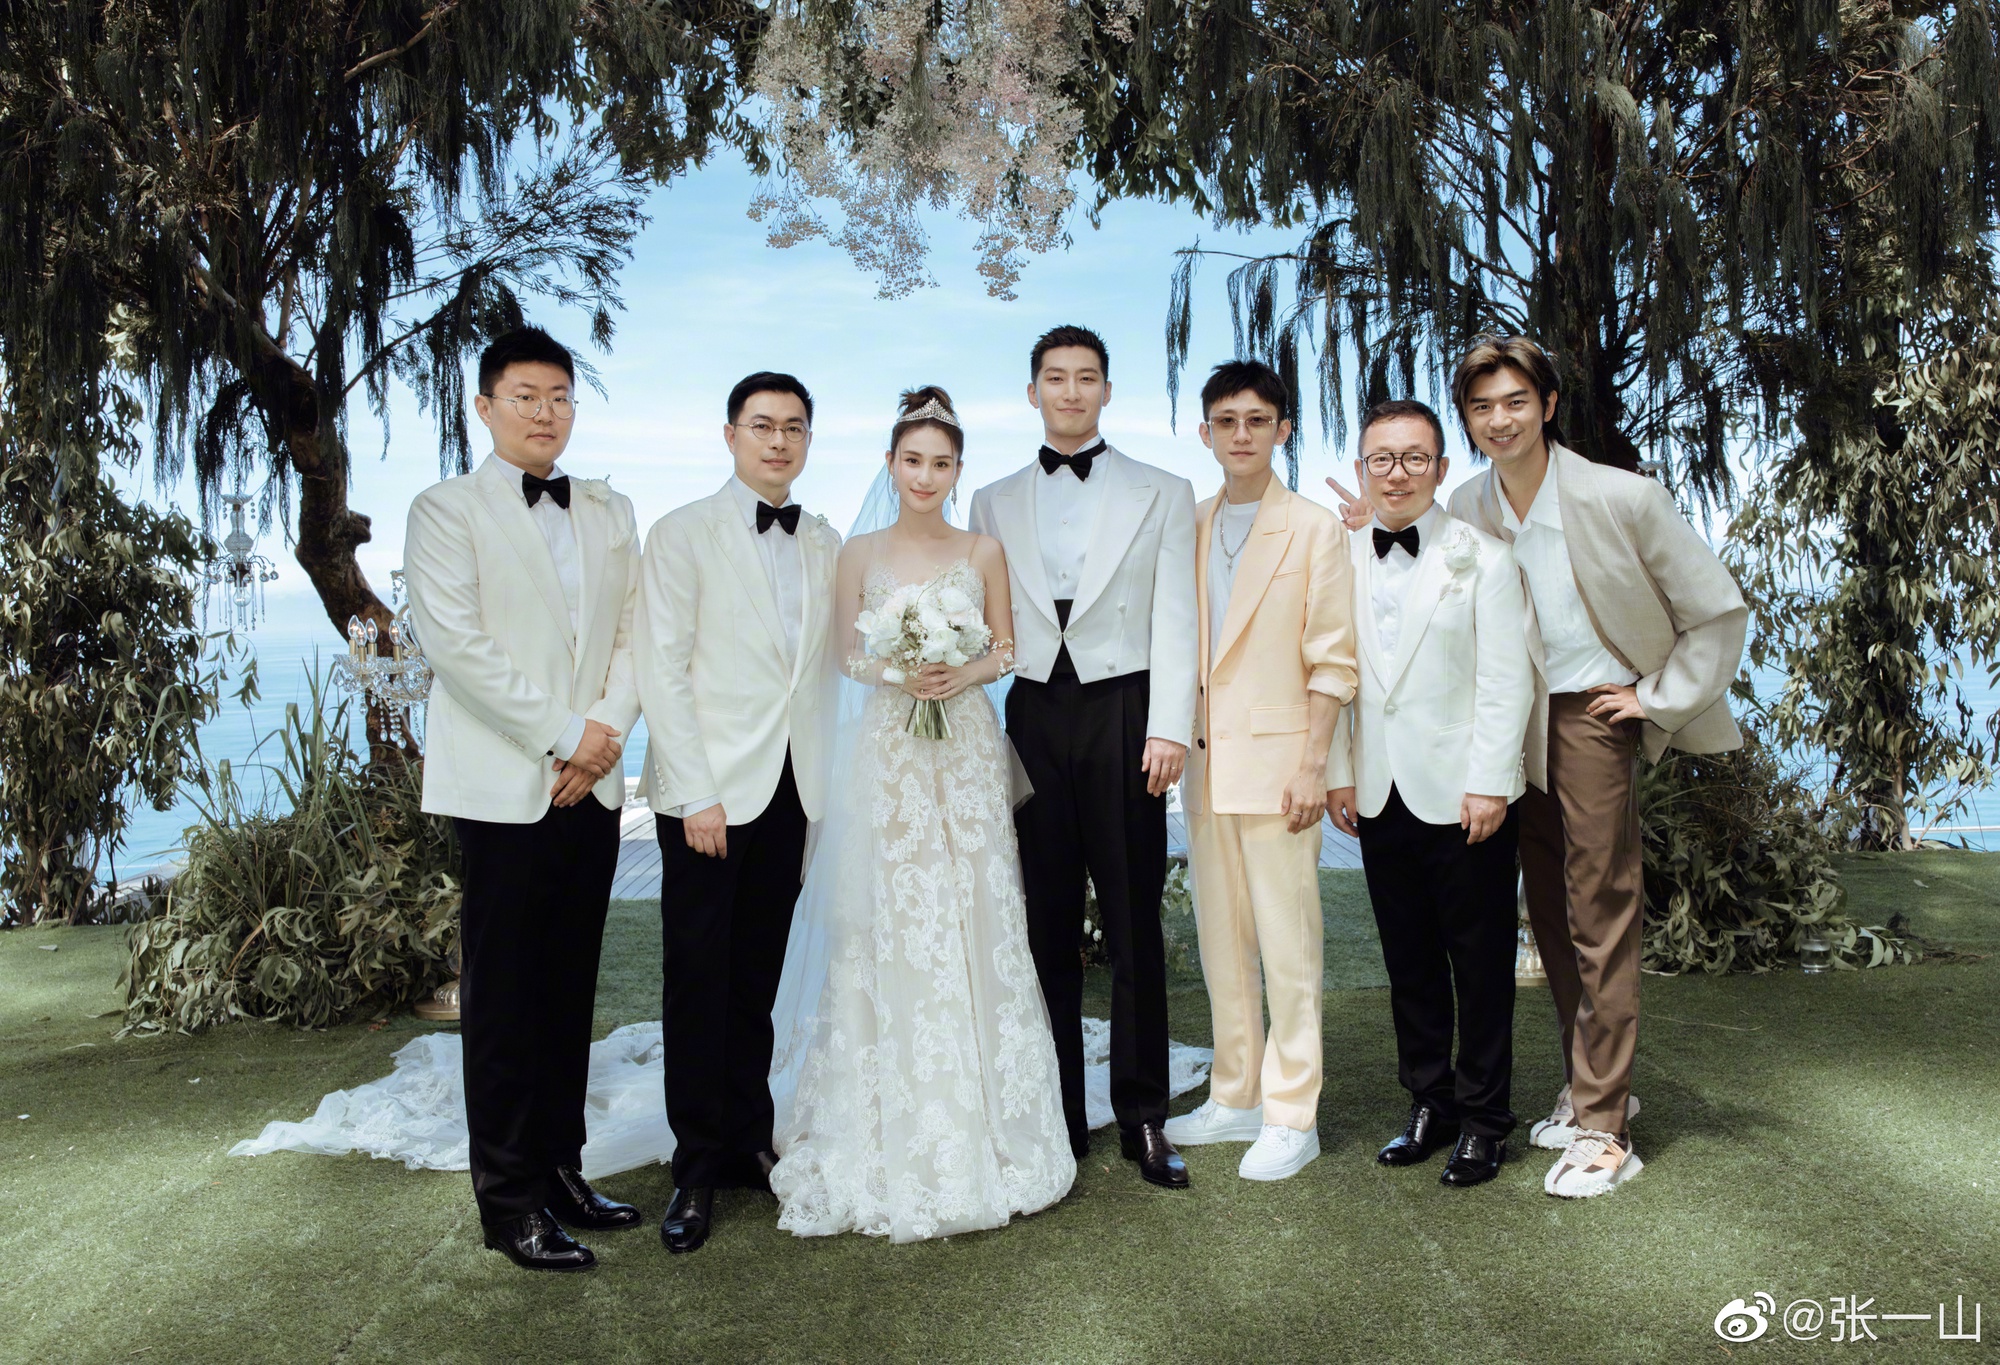 Hé lộ dàn khách mời đặc biệt trong đám cưới Đậu Kiêu và ái nữ vua sòng bài: Từ ca sĩ, diễn viên nổi tiếng Cbiz cho đến Tiểu thiên vương Hong Kong đều có mặt  - Ảnh 1.